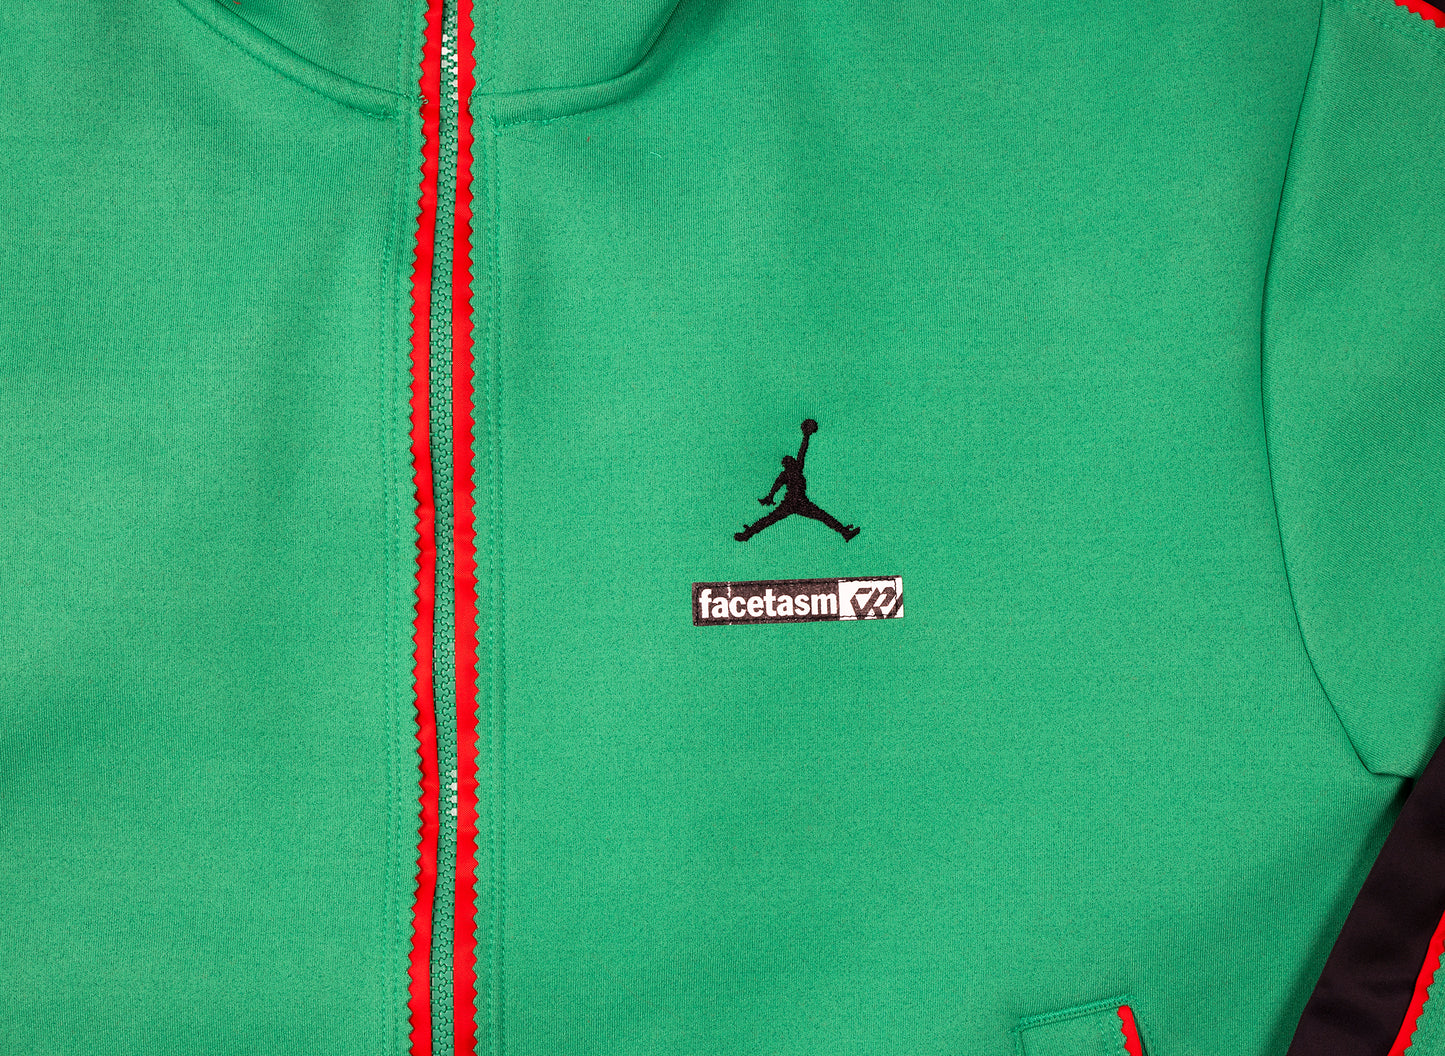 Jordan Why Not? x Facetasm Jacket in Green